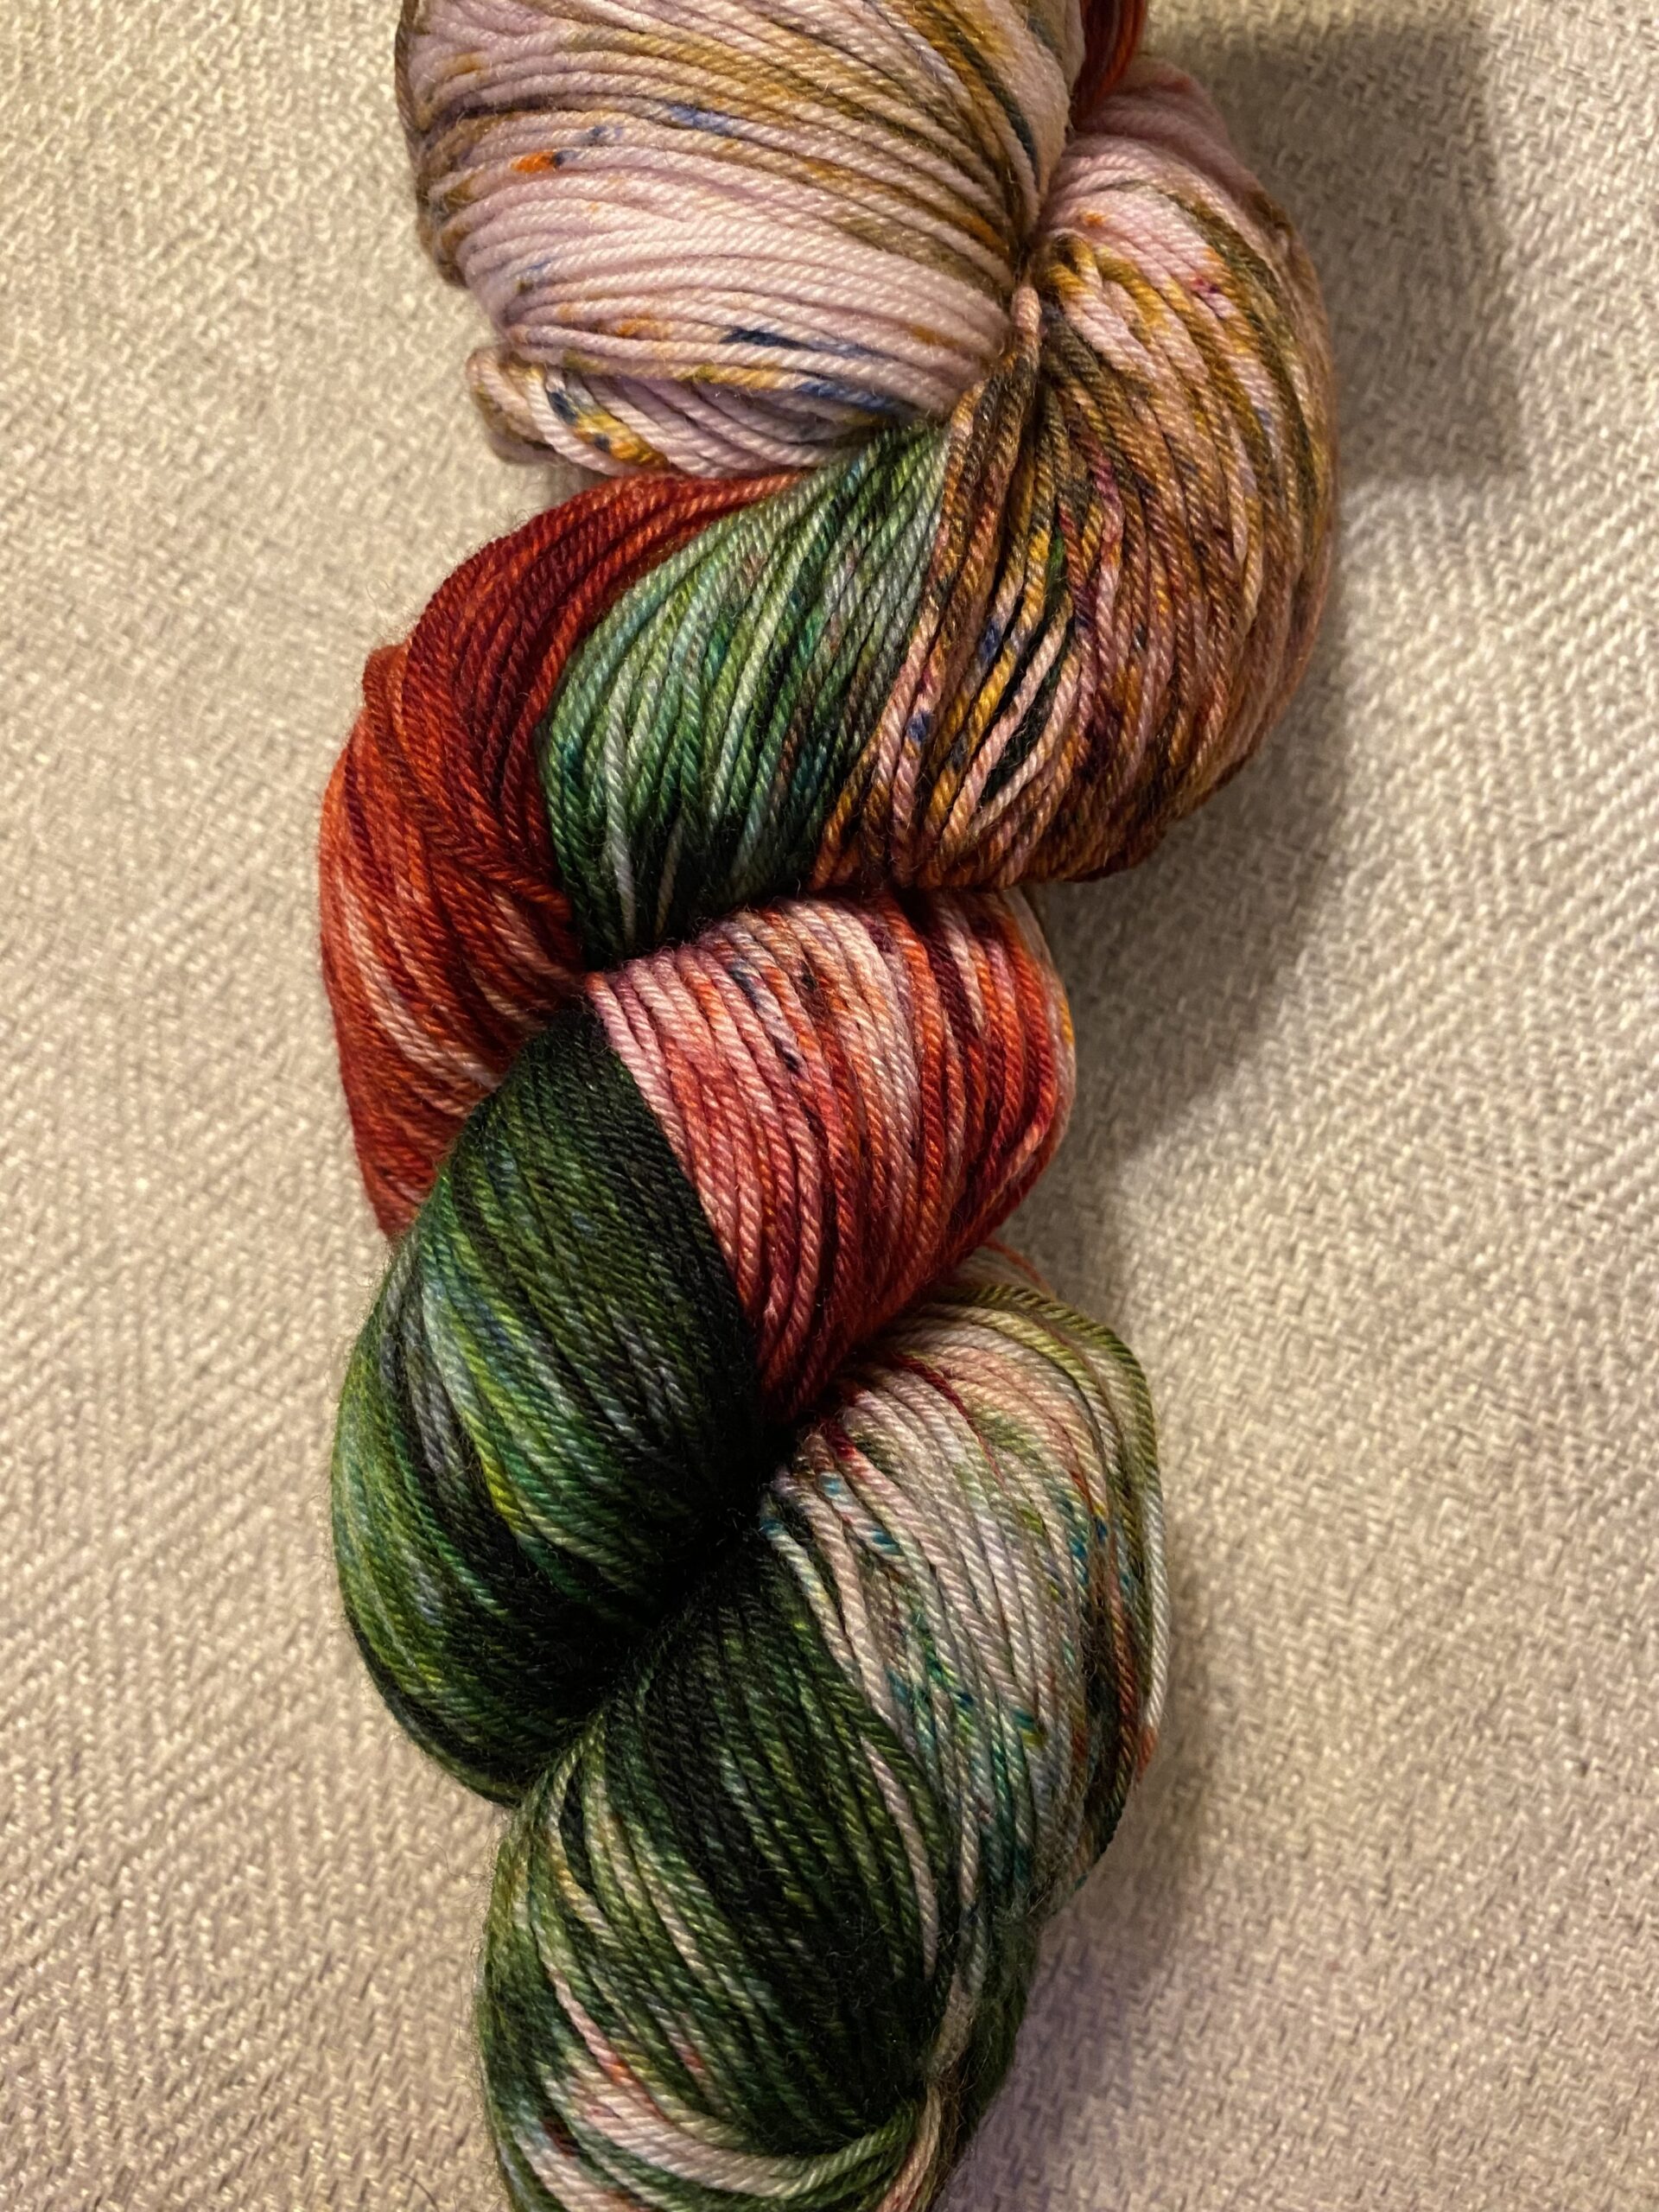  20 Acrylic Yarn Skeins - 438 Yards Multicolored Yarn